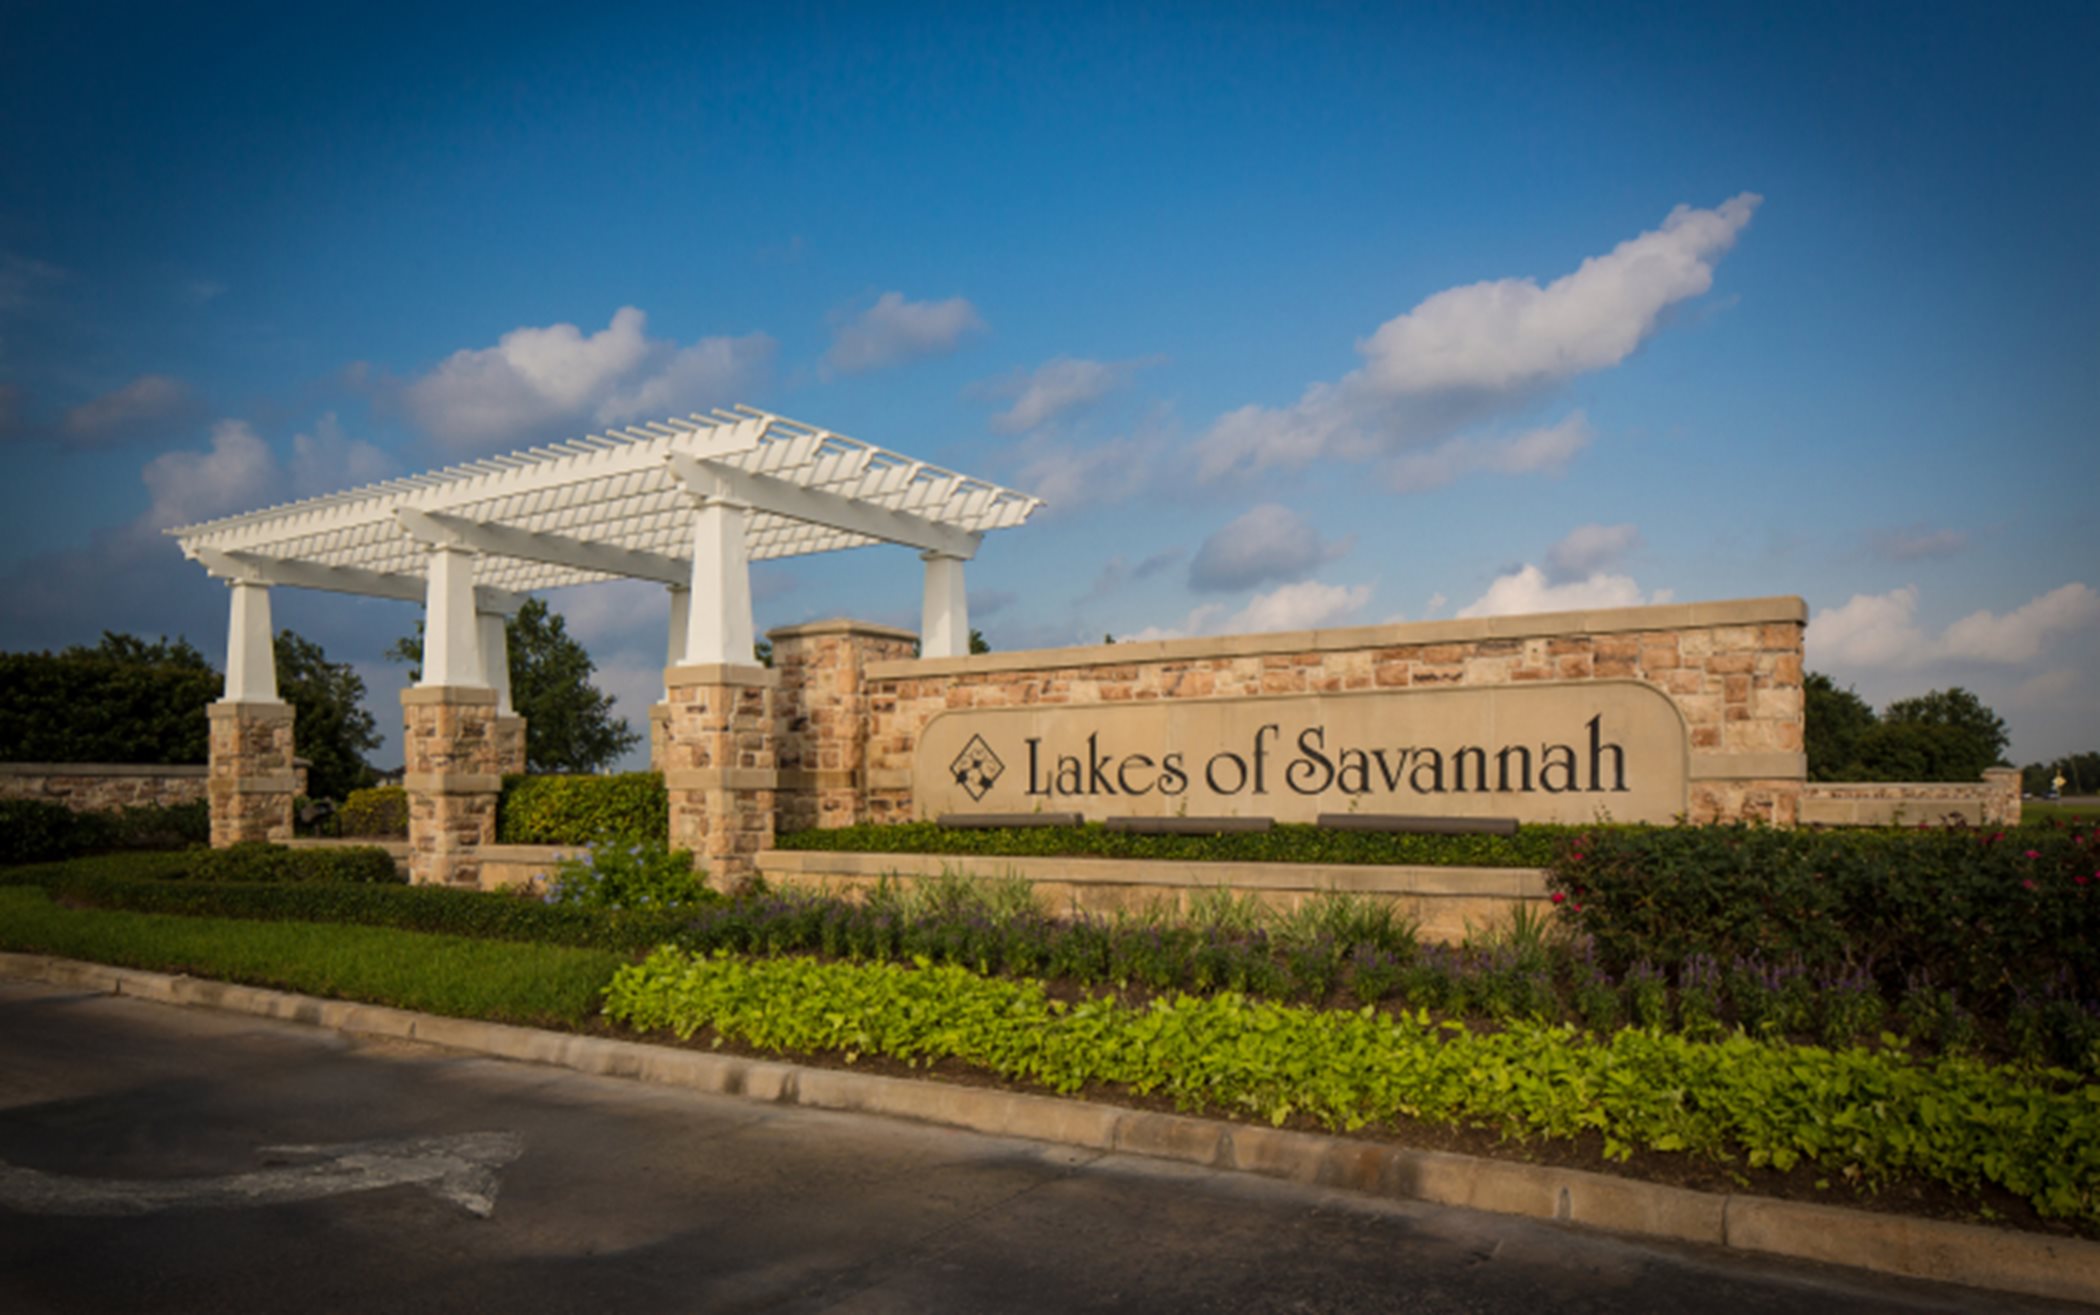 Lakes of Savannah Entrance